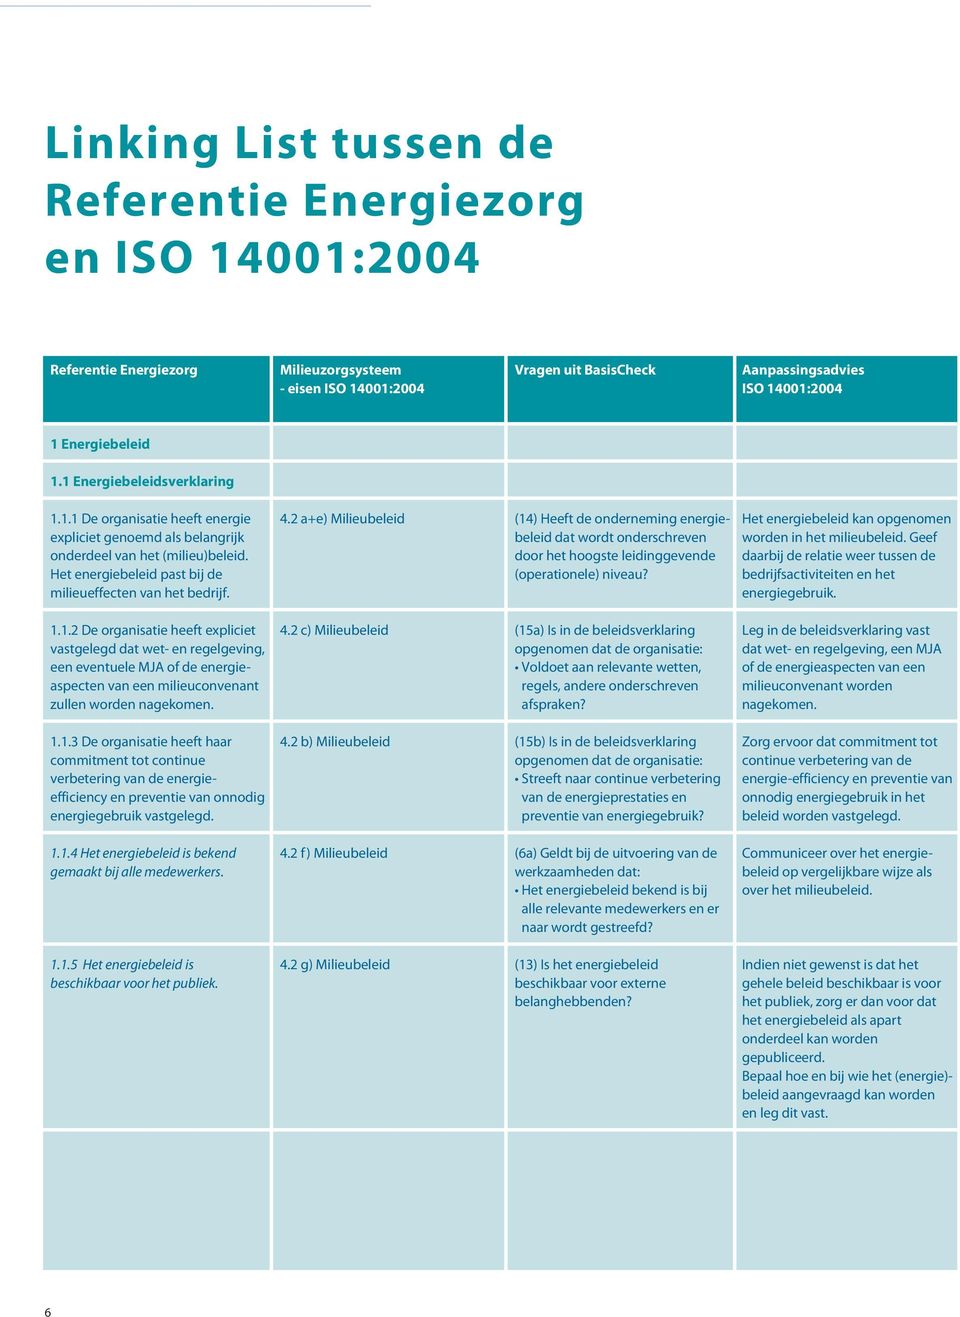 2 a+e) Milieubeleid (14) Heeft de onderneming energie- Het energiebeleid kan opgenomen expliciet genoemd als belangrijk beleid dat wordt onderschreven worden in het milieubeleid.